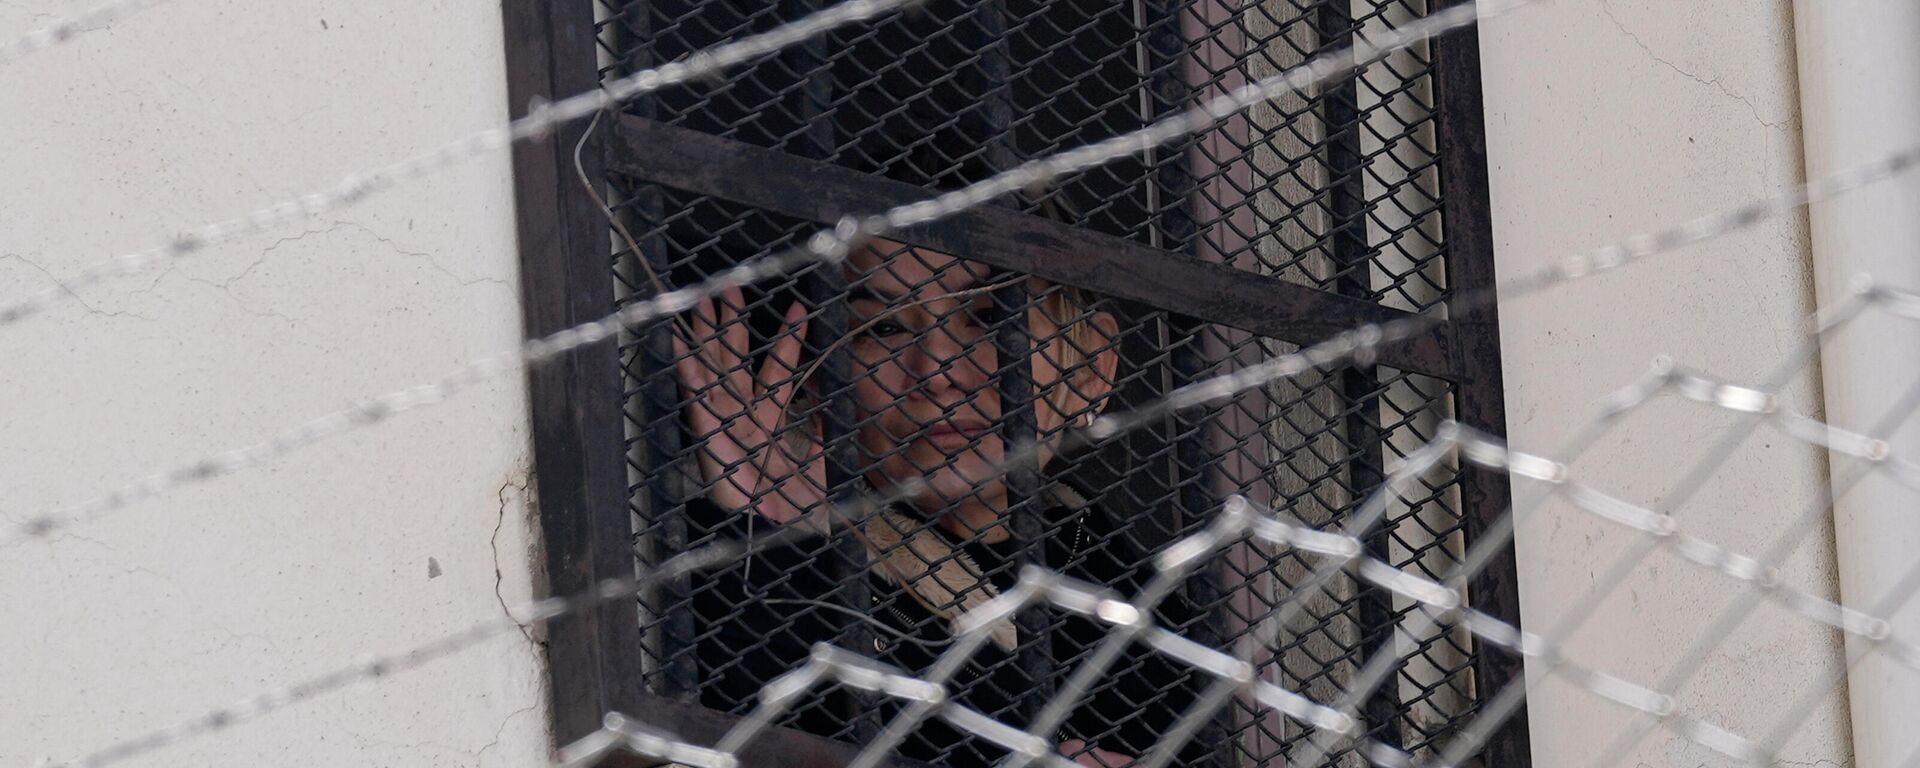 La expresidenta transitoria boliviana, Jeanine Áñez (2019-2020), en la cárcel - Sputnik Mundo, 1920, 09.02.2022